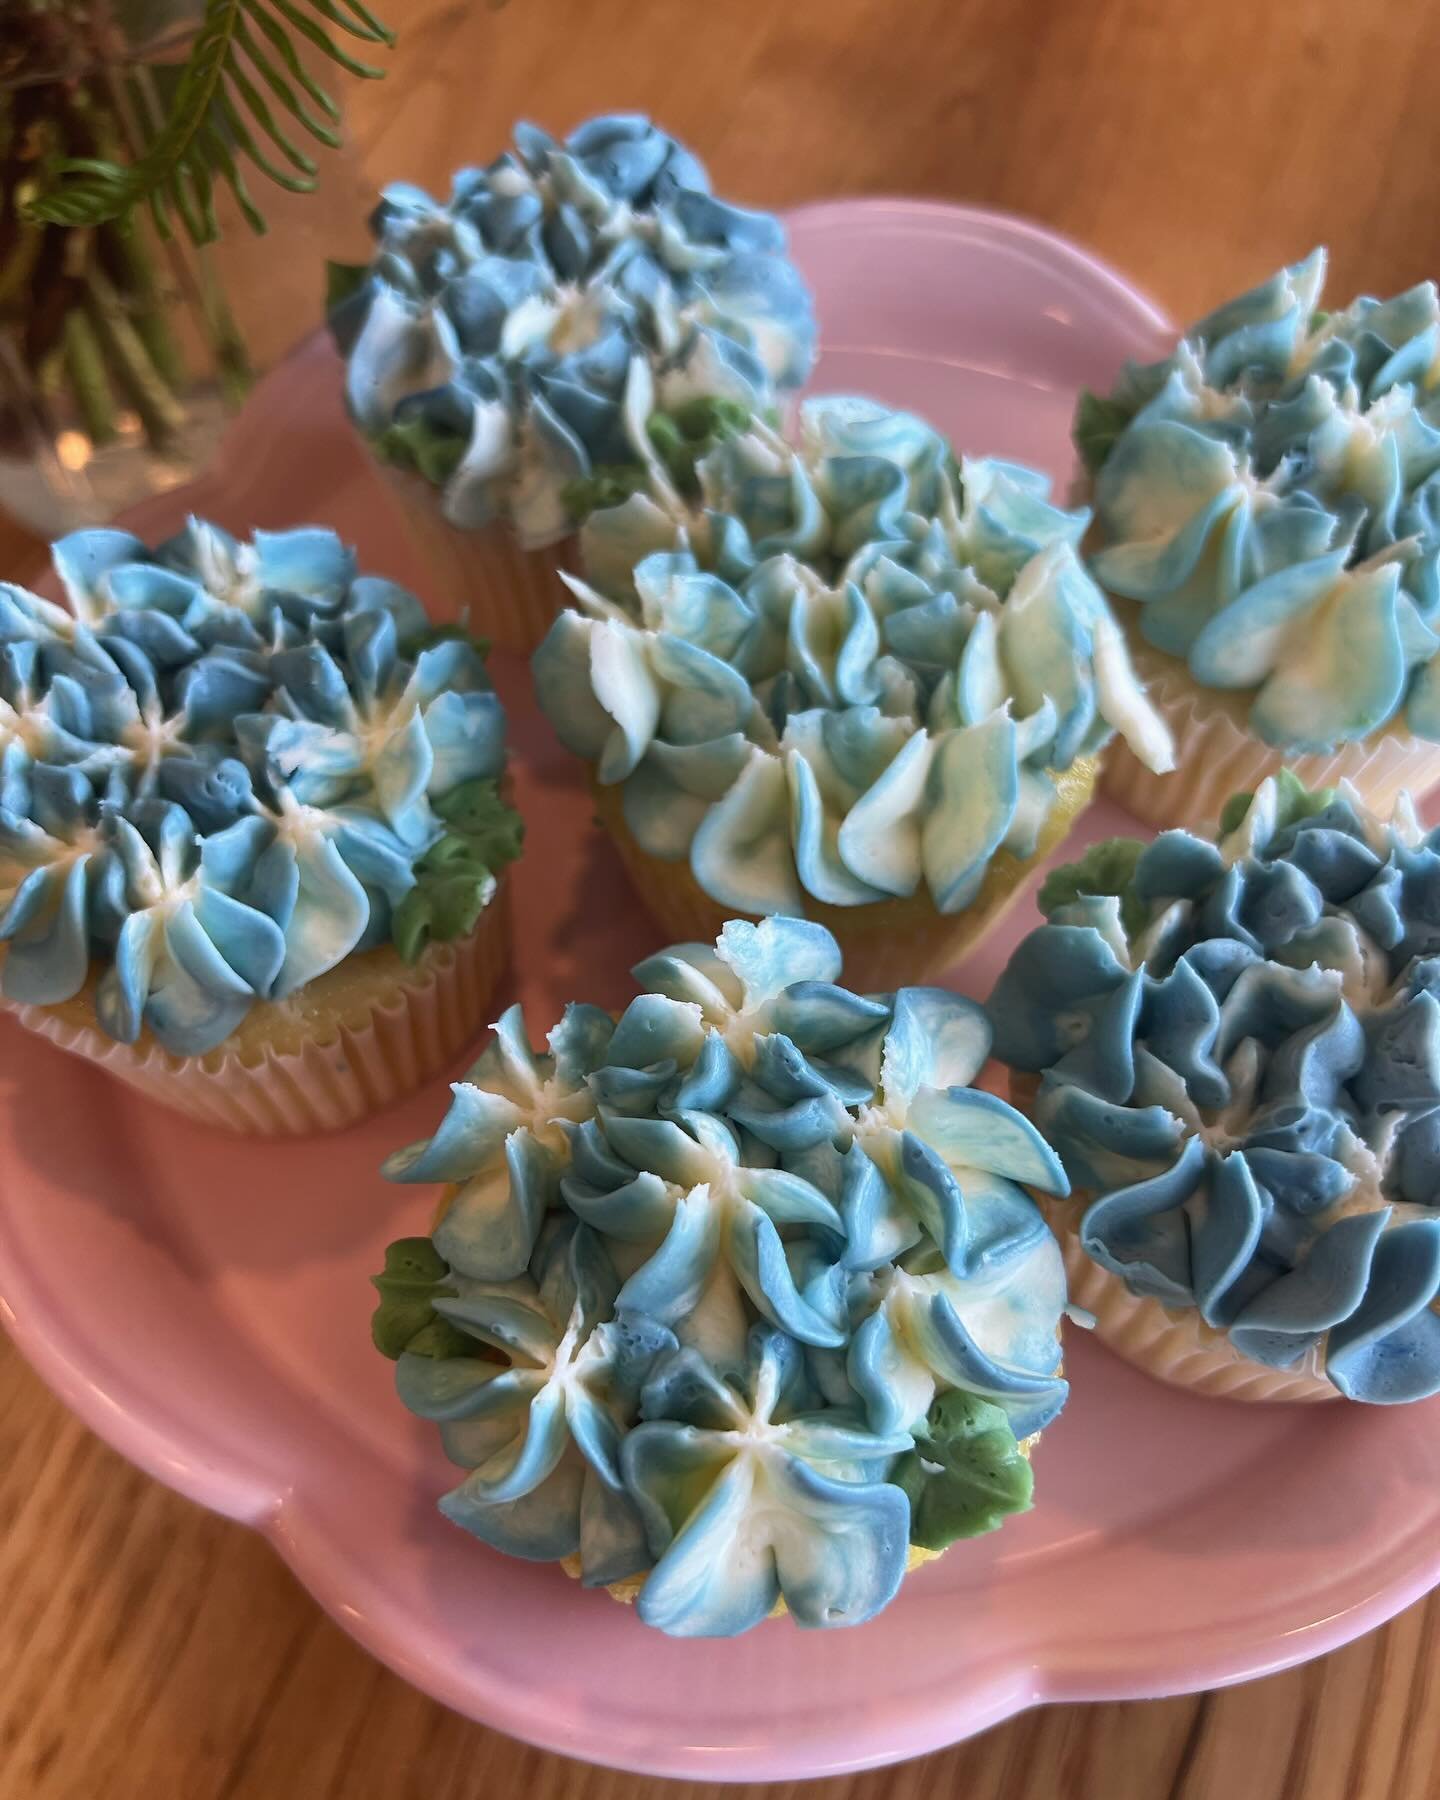 🌺 Hydrangea cupcakes 🌺
.
.
#cupcakes #cakedecorating #hanoverma #bostonfood #southshorema #cupcakedecorating